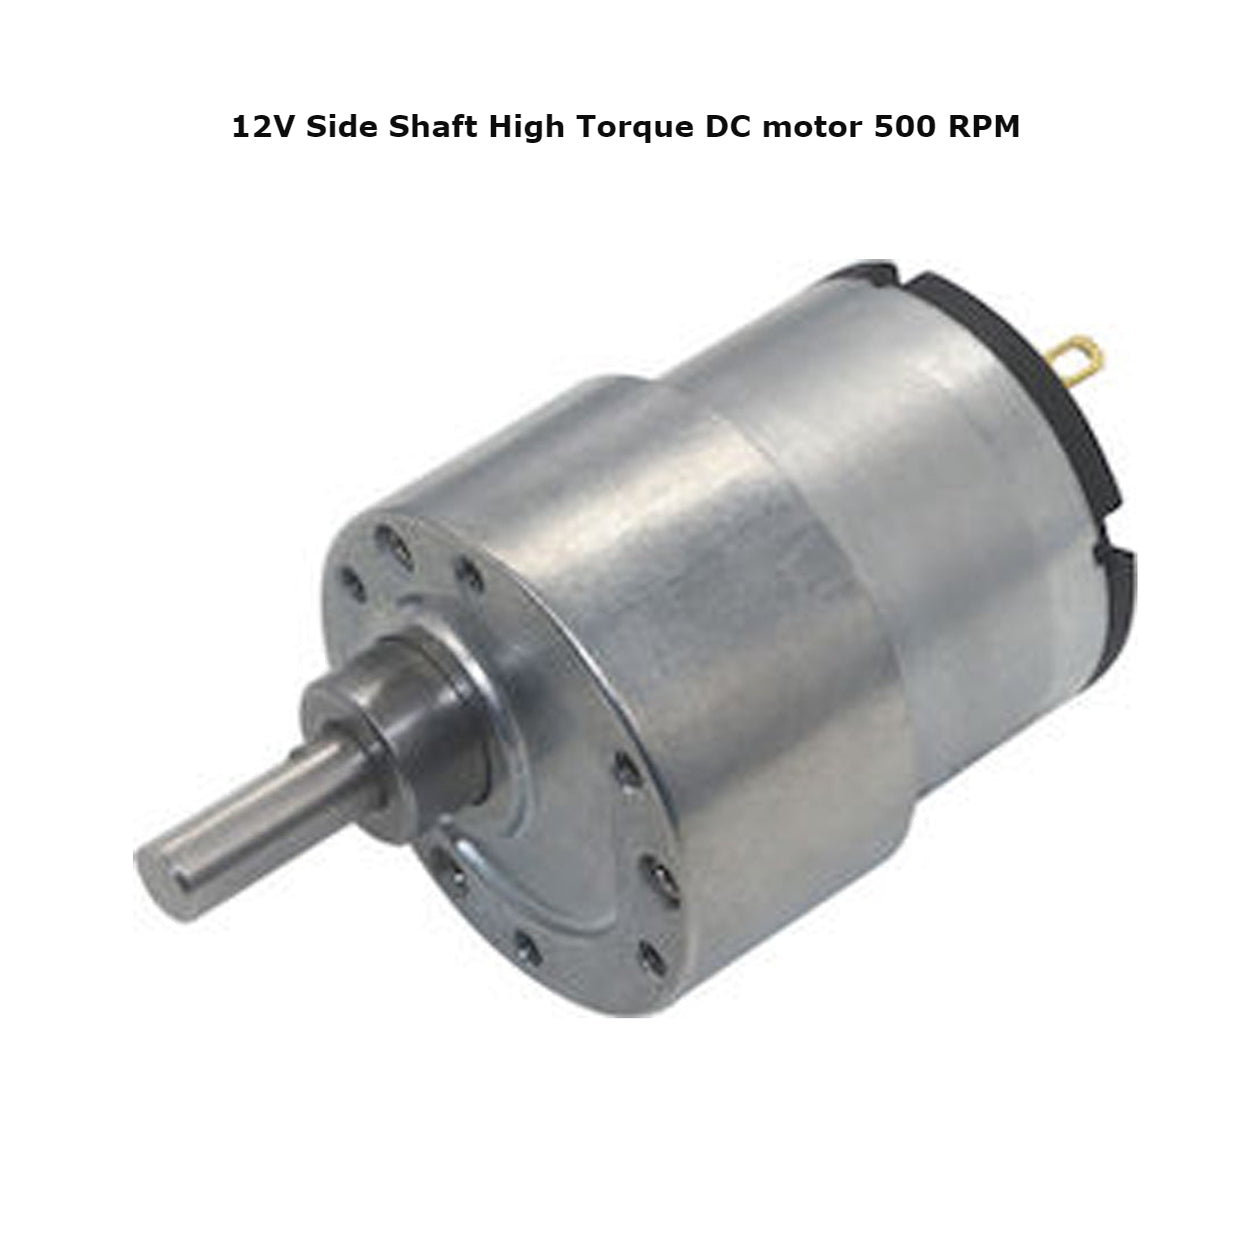 12V Side Shaft High Torque DC motor 10RPM - 500RPM